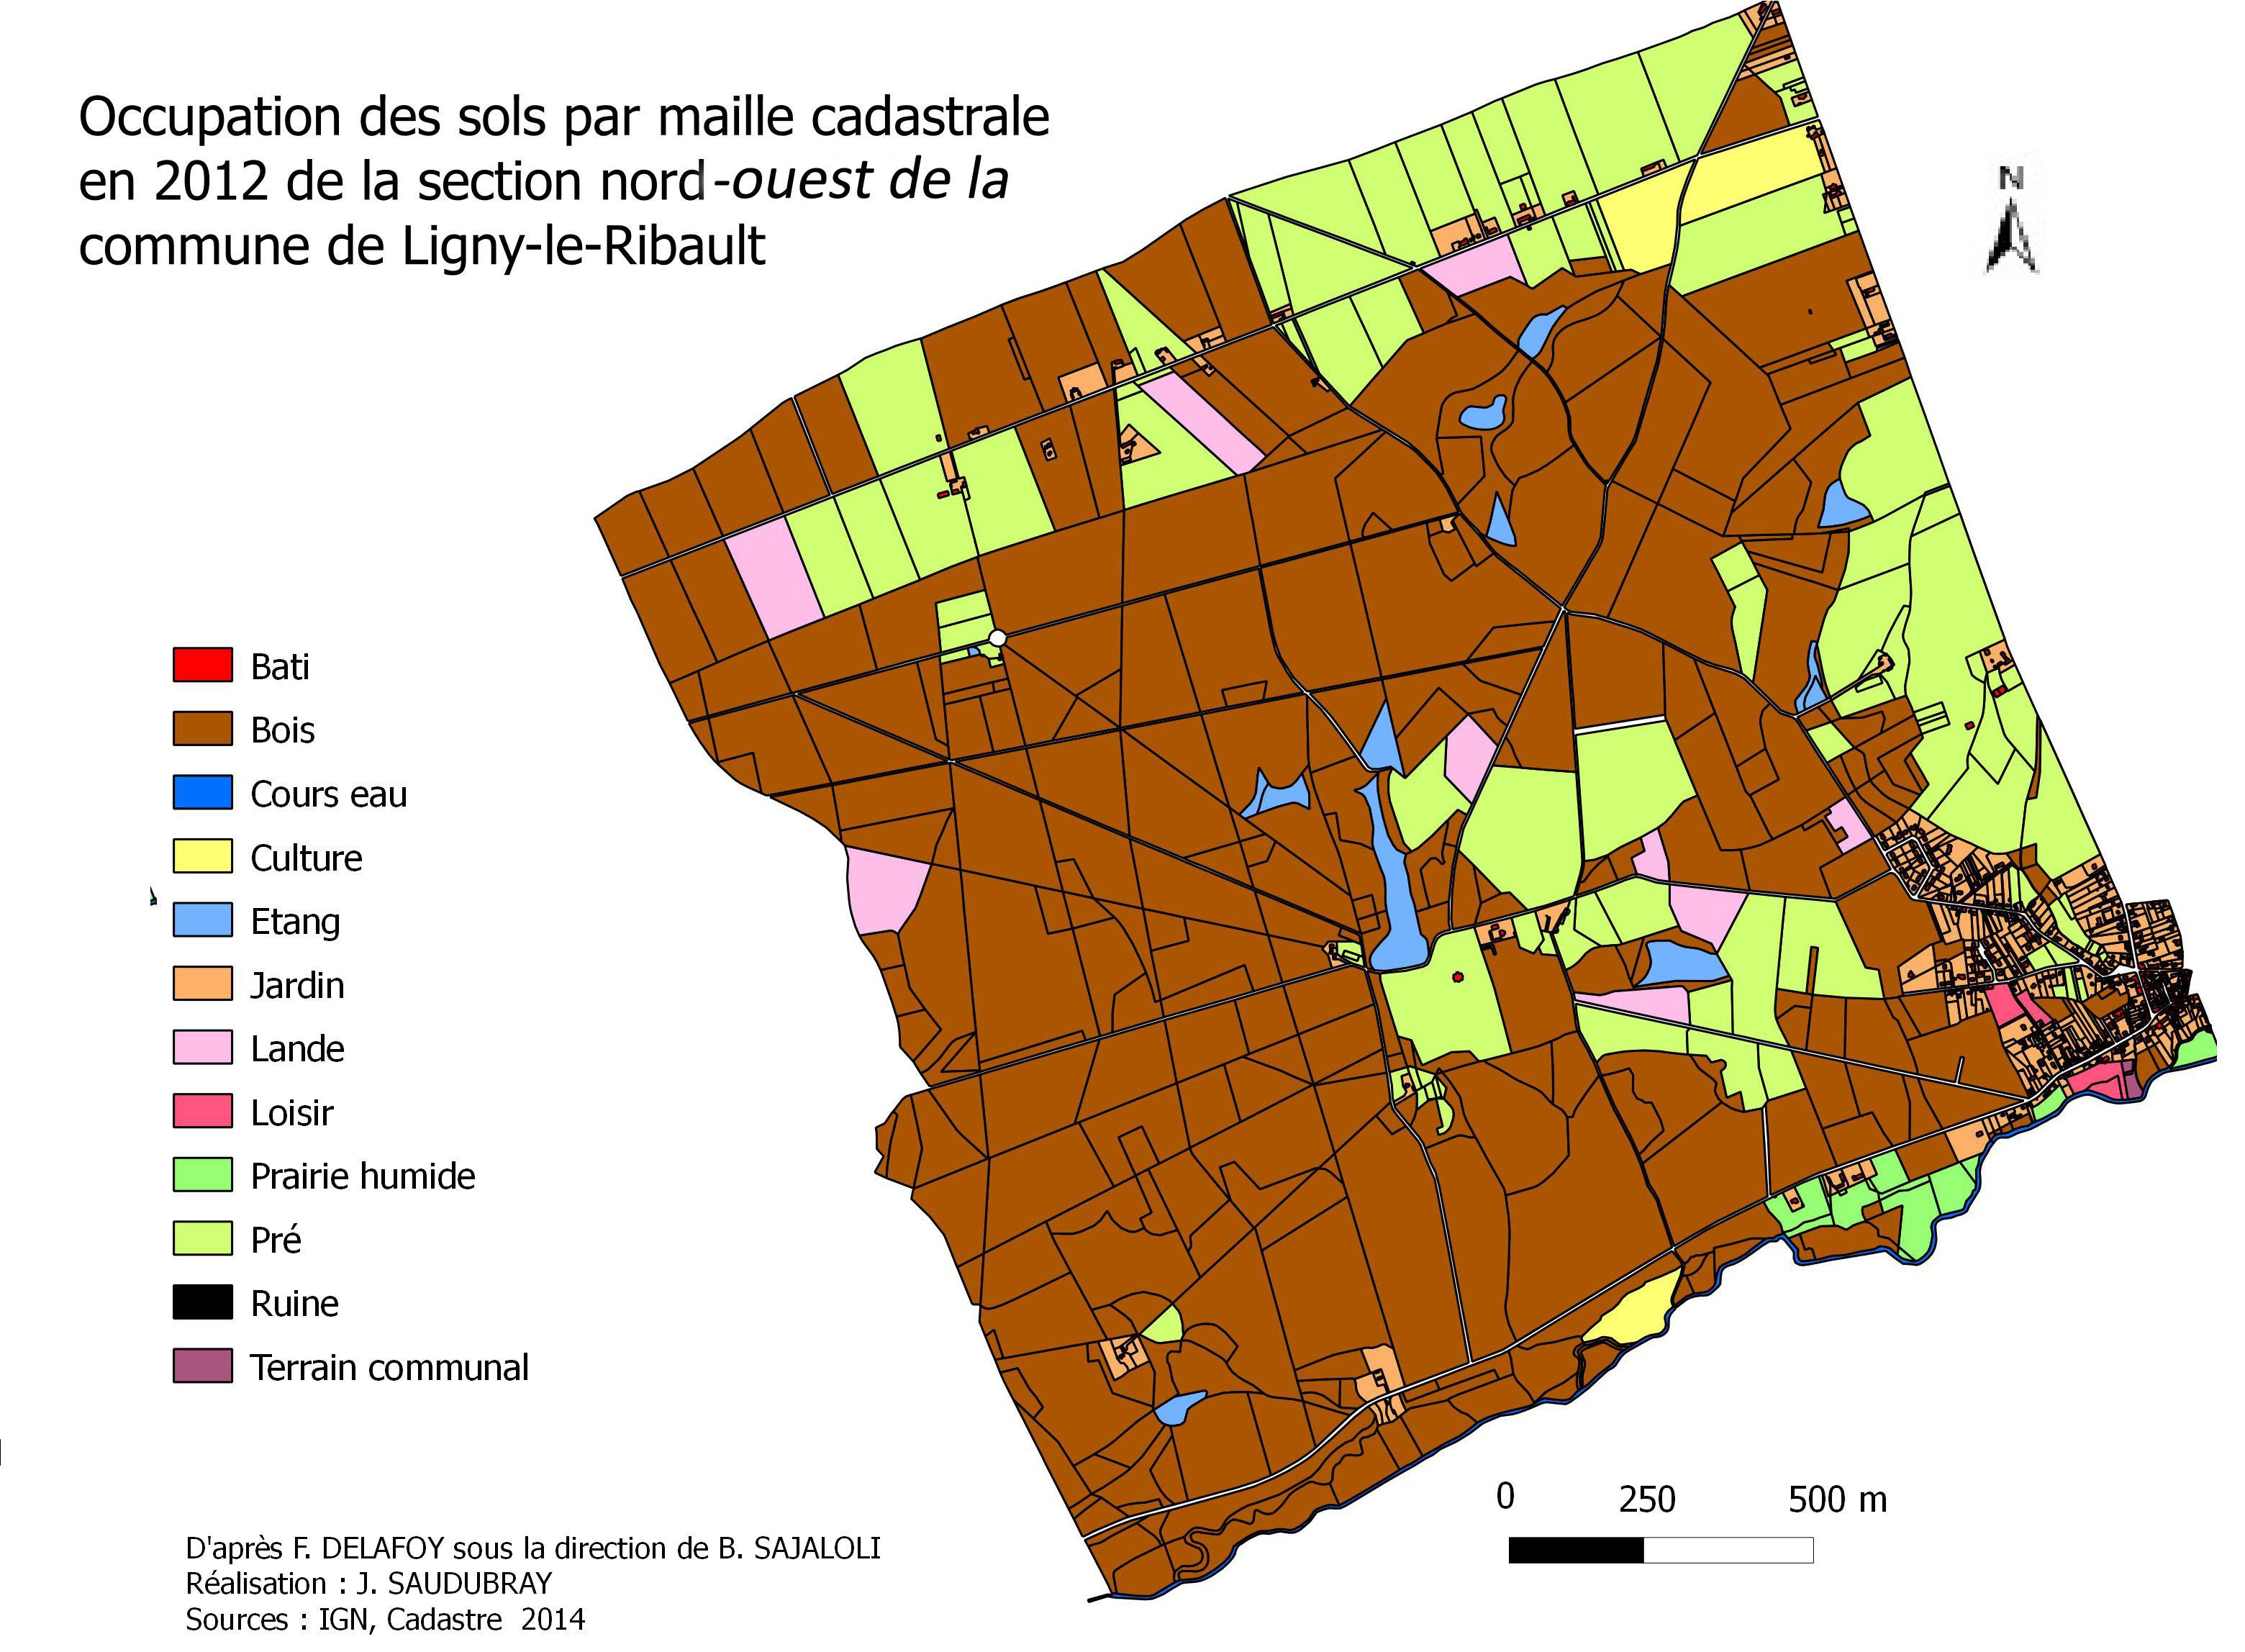 Occupation du sol dans le secteur nord-ouest de la commune de Ligny le Ribault en 2012.